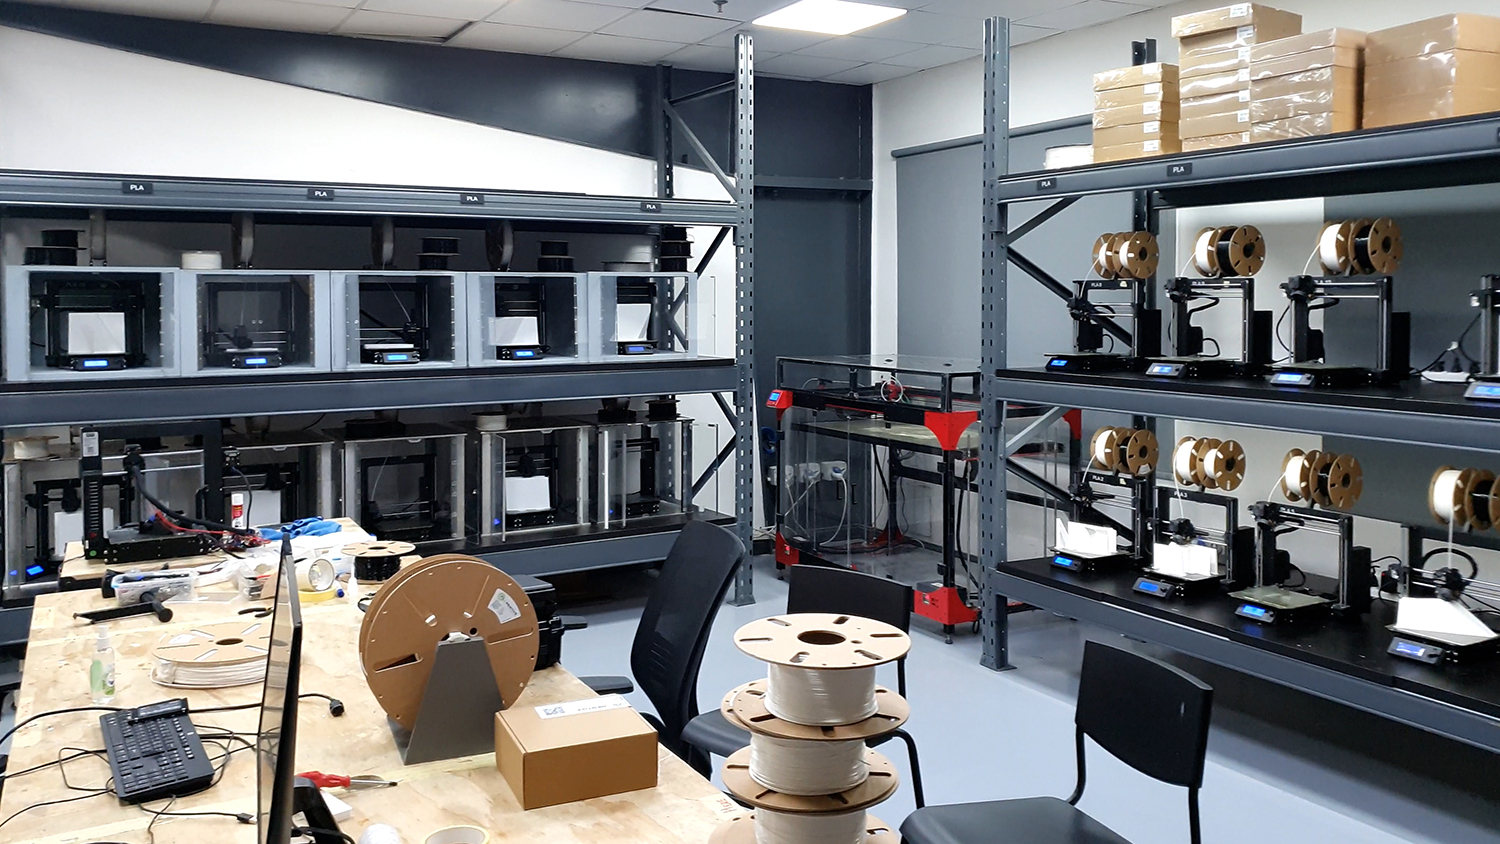 Matériel d'atelier imprimé en 3D : outils et gabarits - Original Prusa 3D  Printers